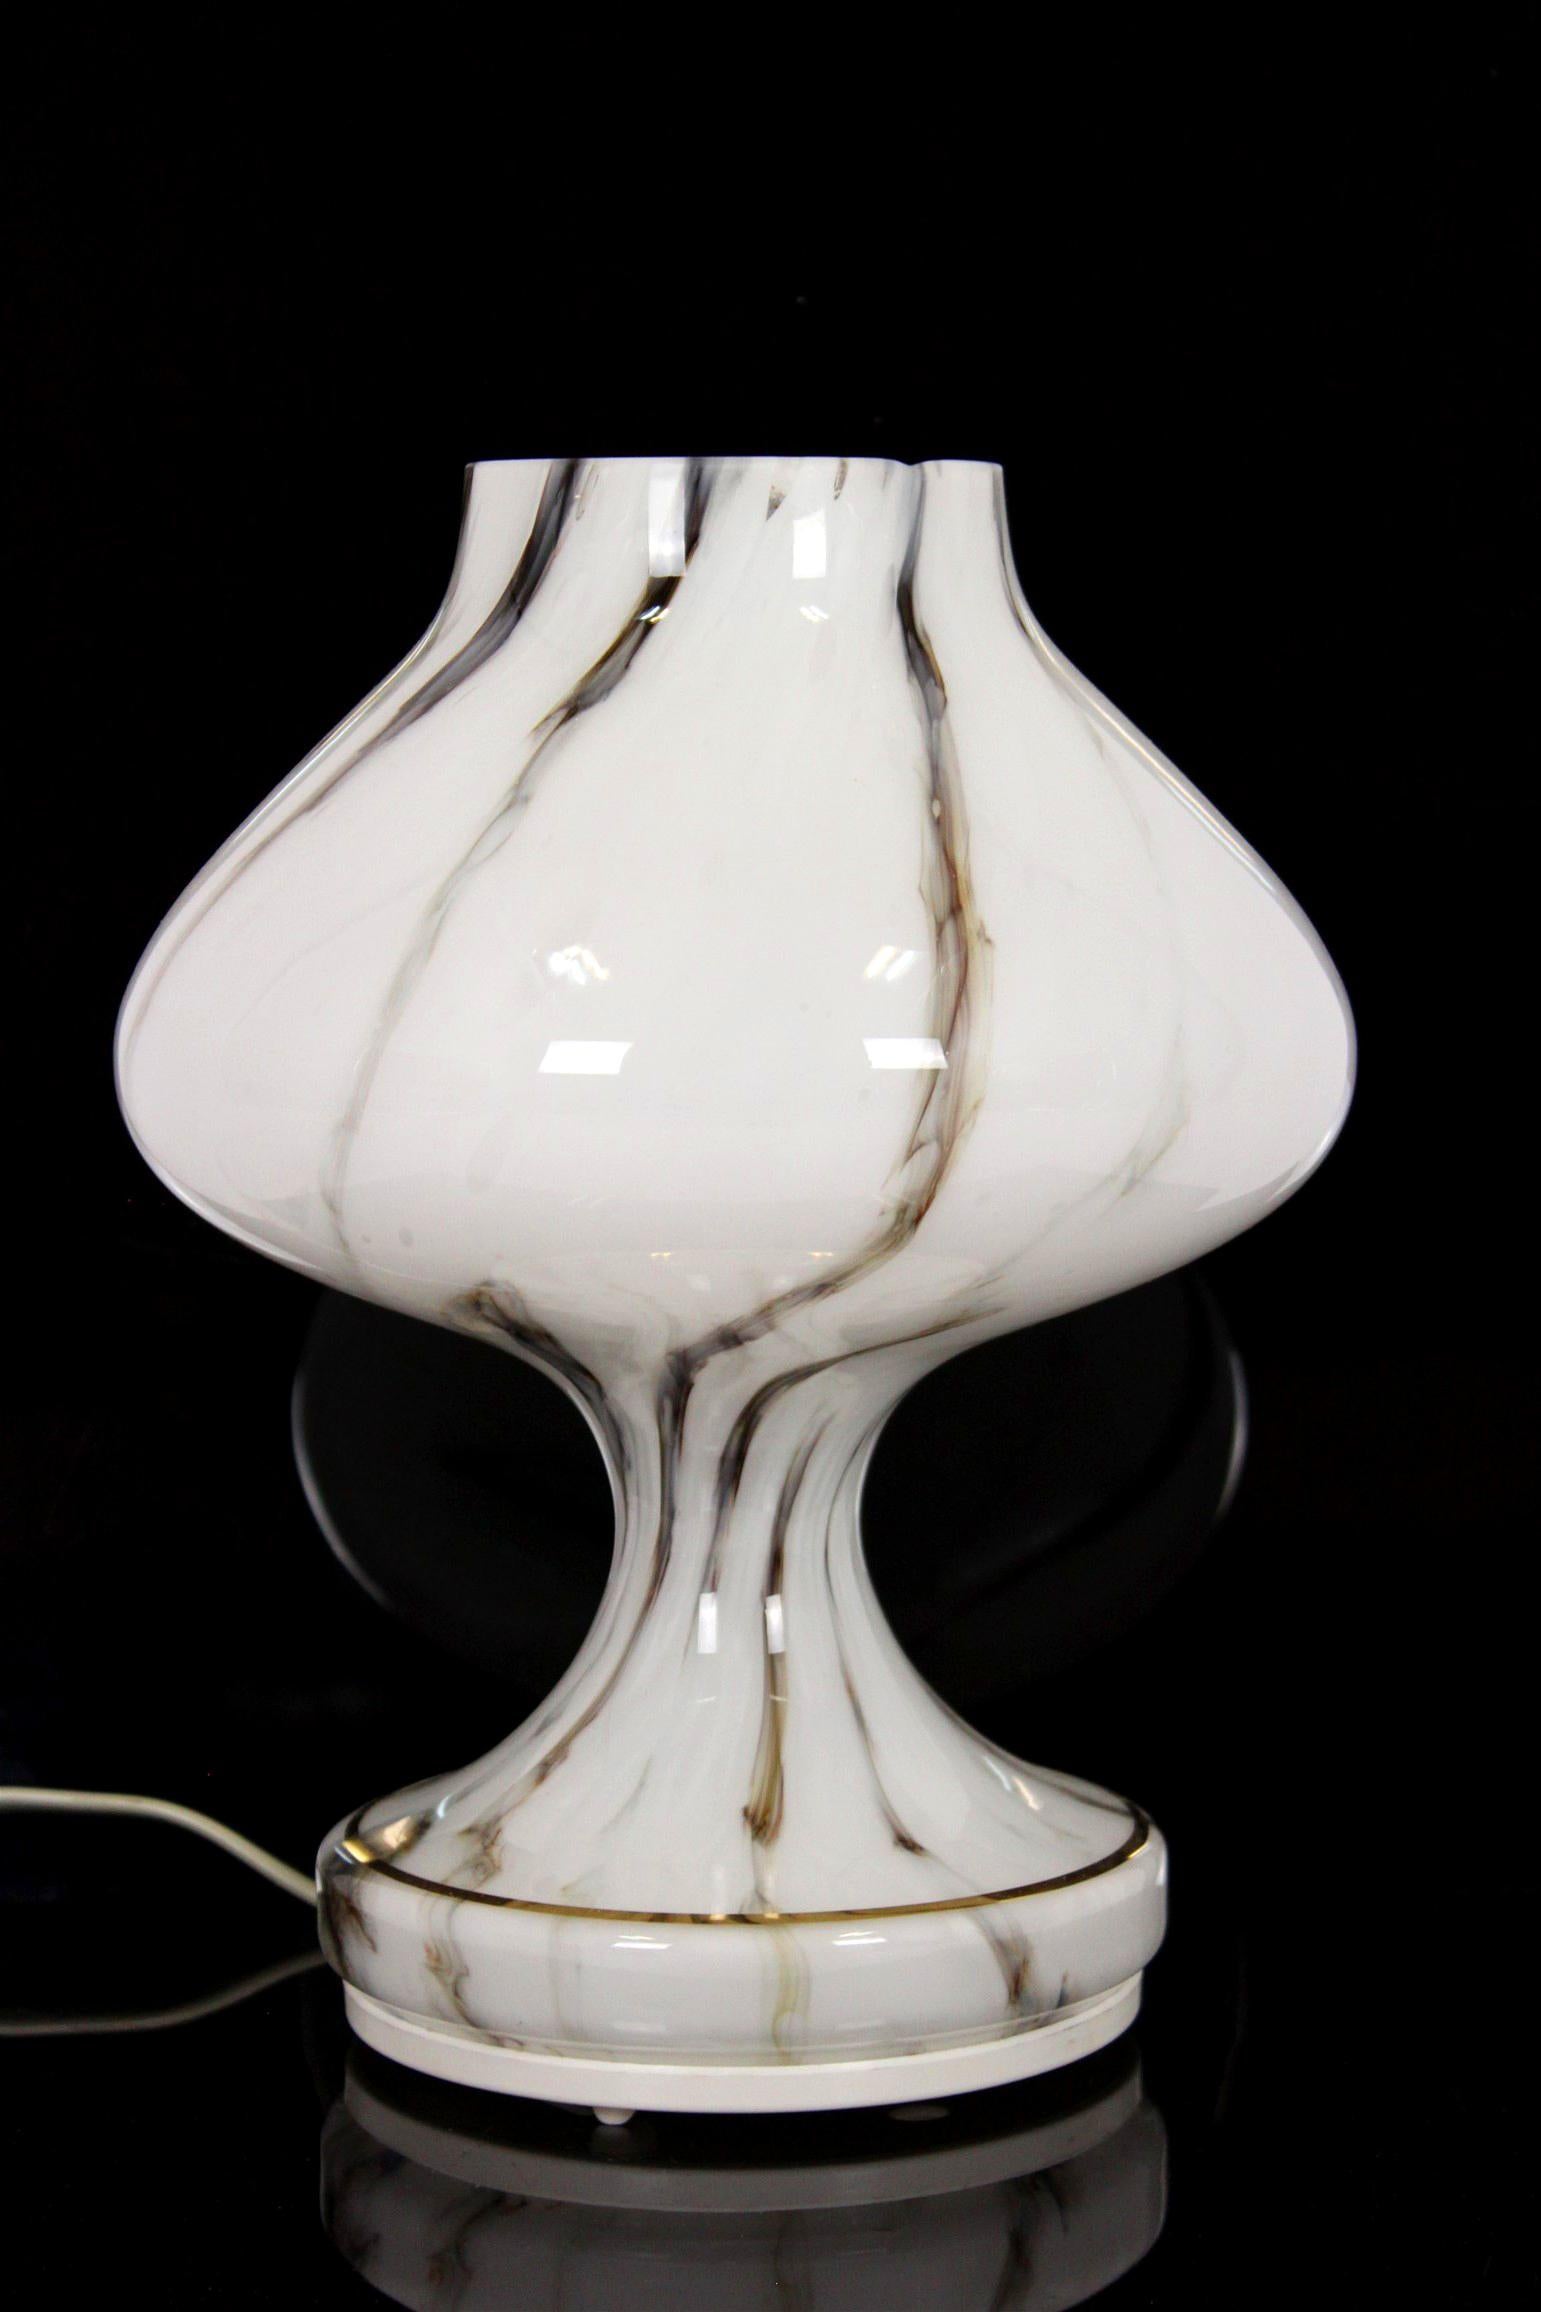 Cette lampe de table en verre a été conçue par Štepán Tabera et produite par OPP Jihlava en Tchécoslovaquie dans les années 1970. La lampe est en très bon état vintage, entièrement fonctionnelle.